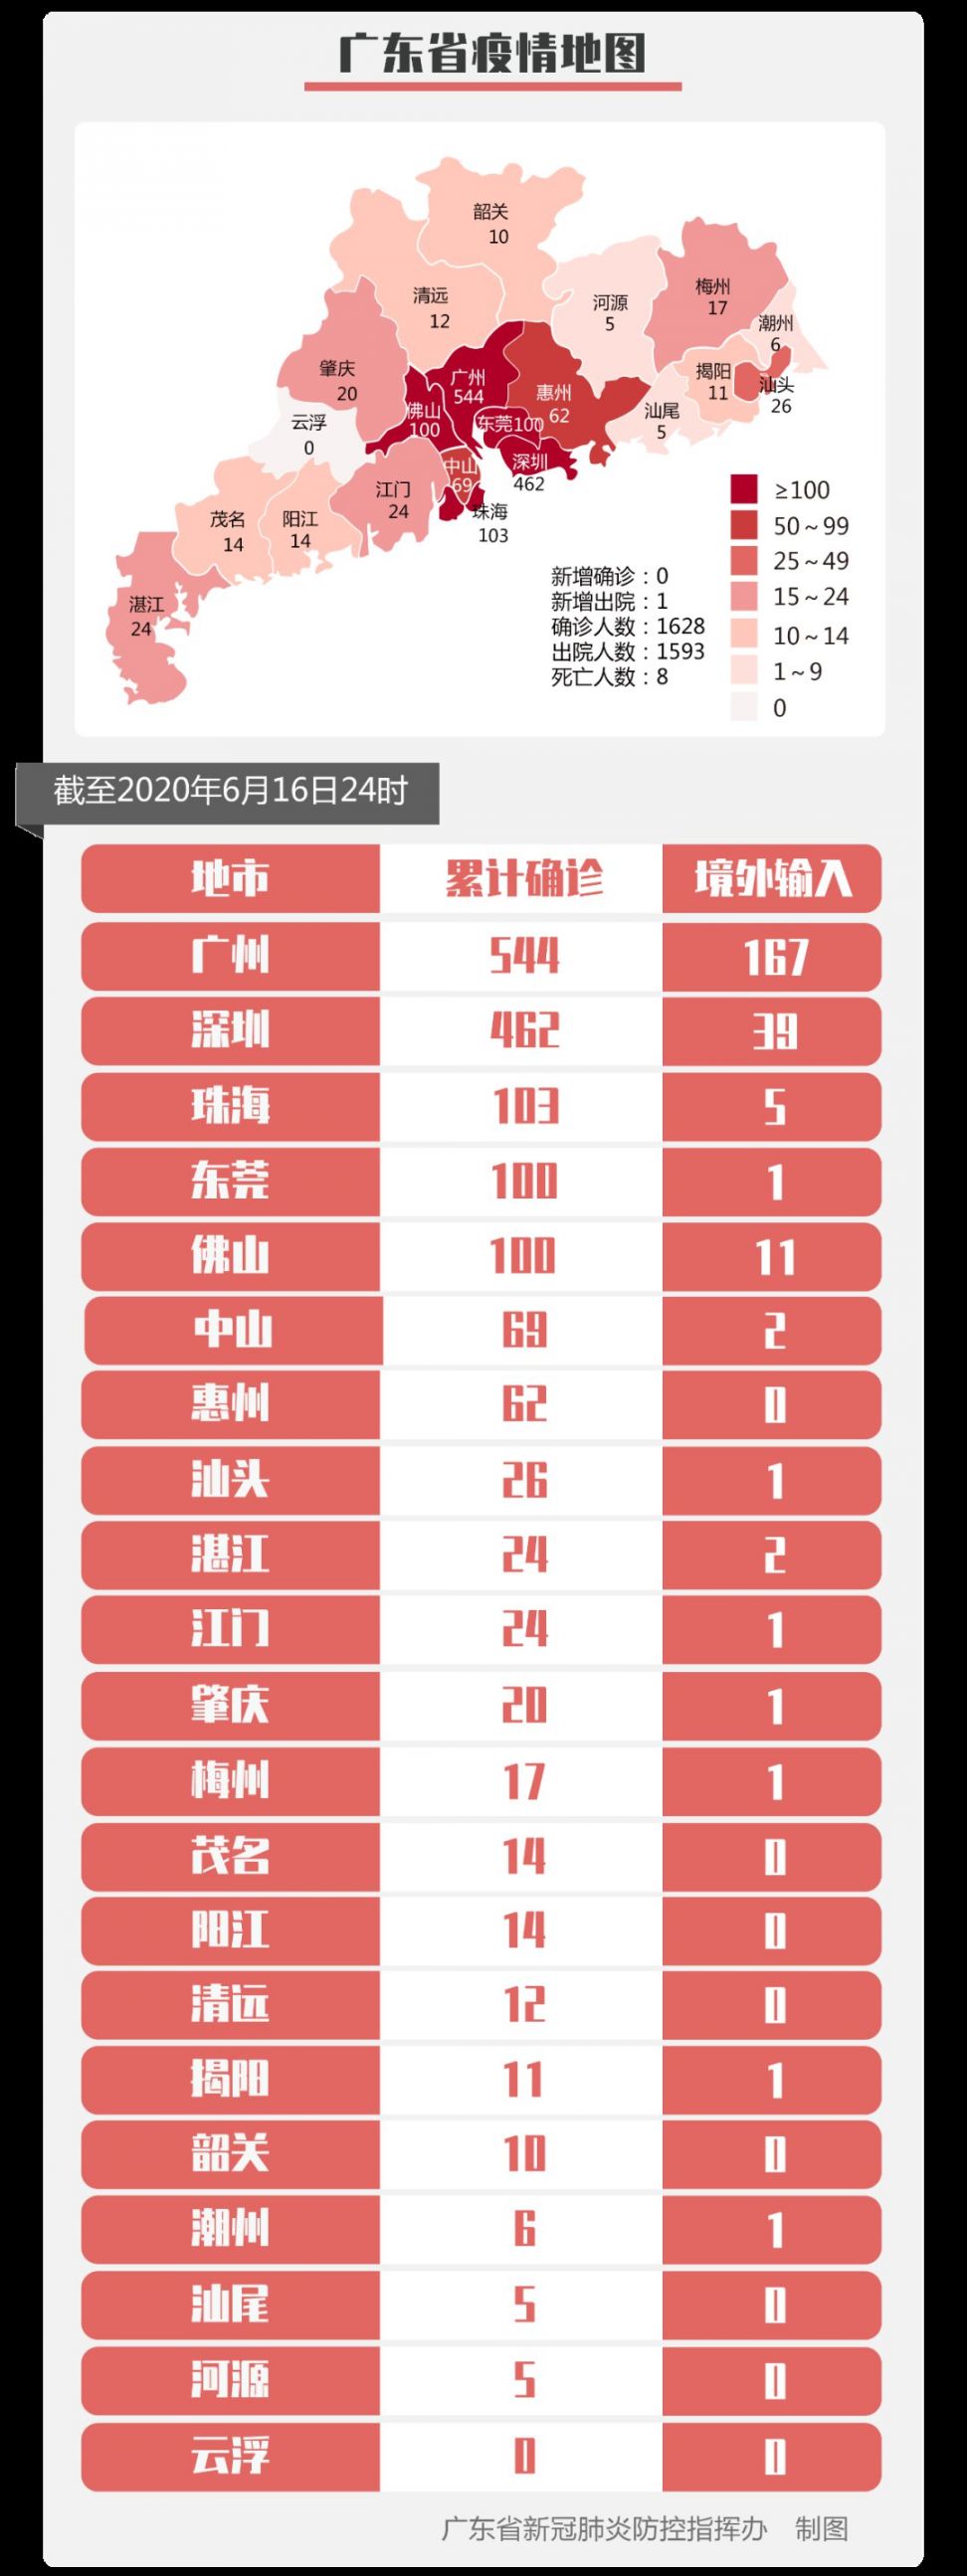 6月16日广州疫情数据无新增新冠肺炎确诊病例